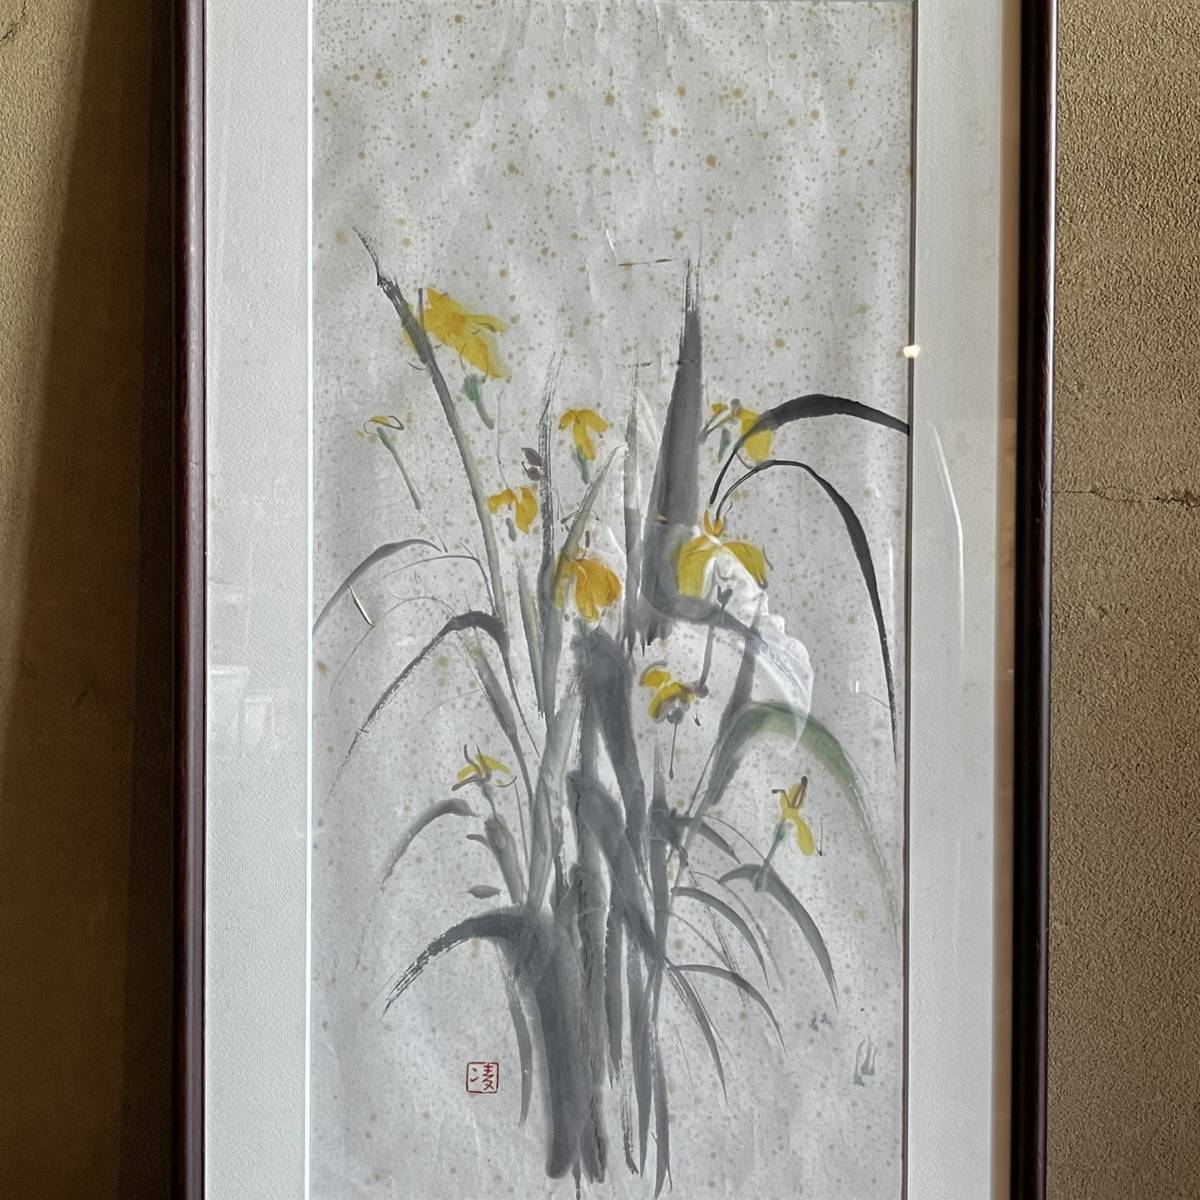 لوحة حبر لنبات زهرة ريوها نيشيماتسو مؤطرة بأصالة مضمونة مستعملة 23.3.30-3, عمل فني, تلوين, آحرون